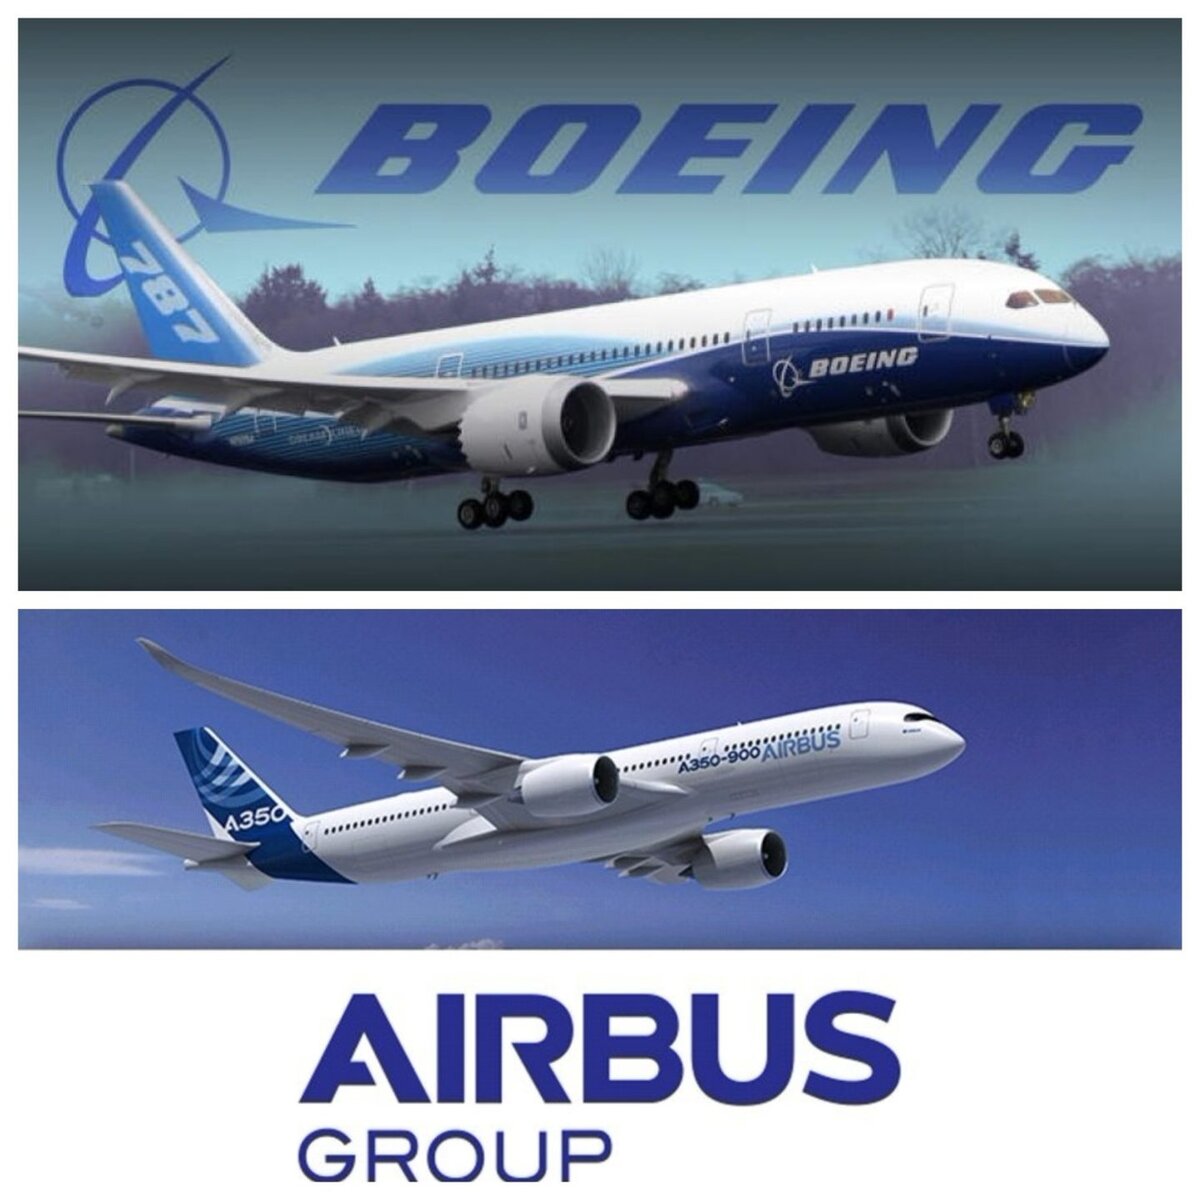 Boeing vs airbus. Аэробус а380 и Боинг 737. Airbus a380-900 и Боинг 737. Boeing Airbus. Самолеты Boeing и Airbus.